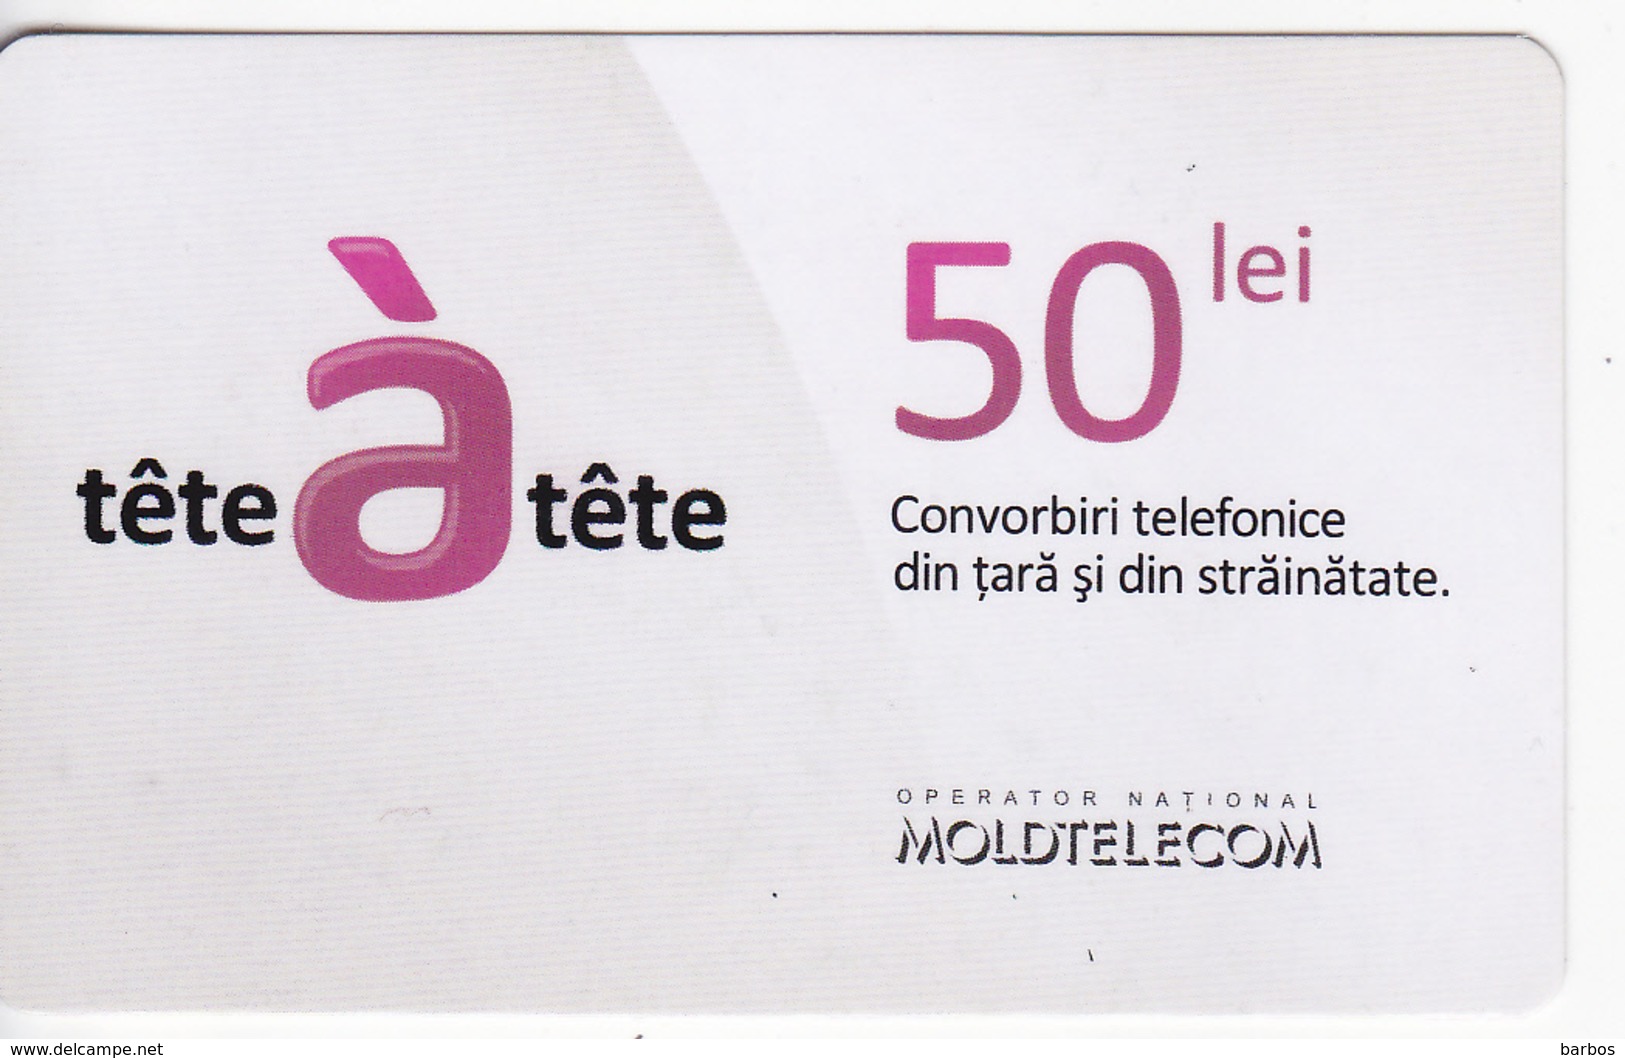 Moldova - MOLDOVA - Moldtelecom 50 units Prepaid card ,used